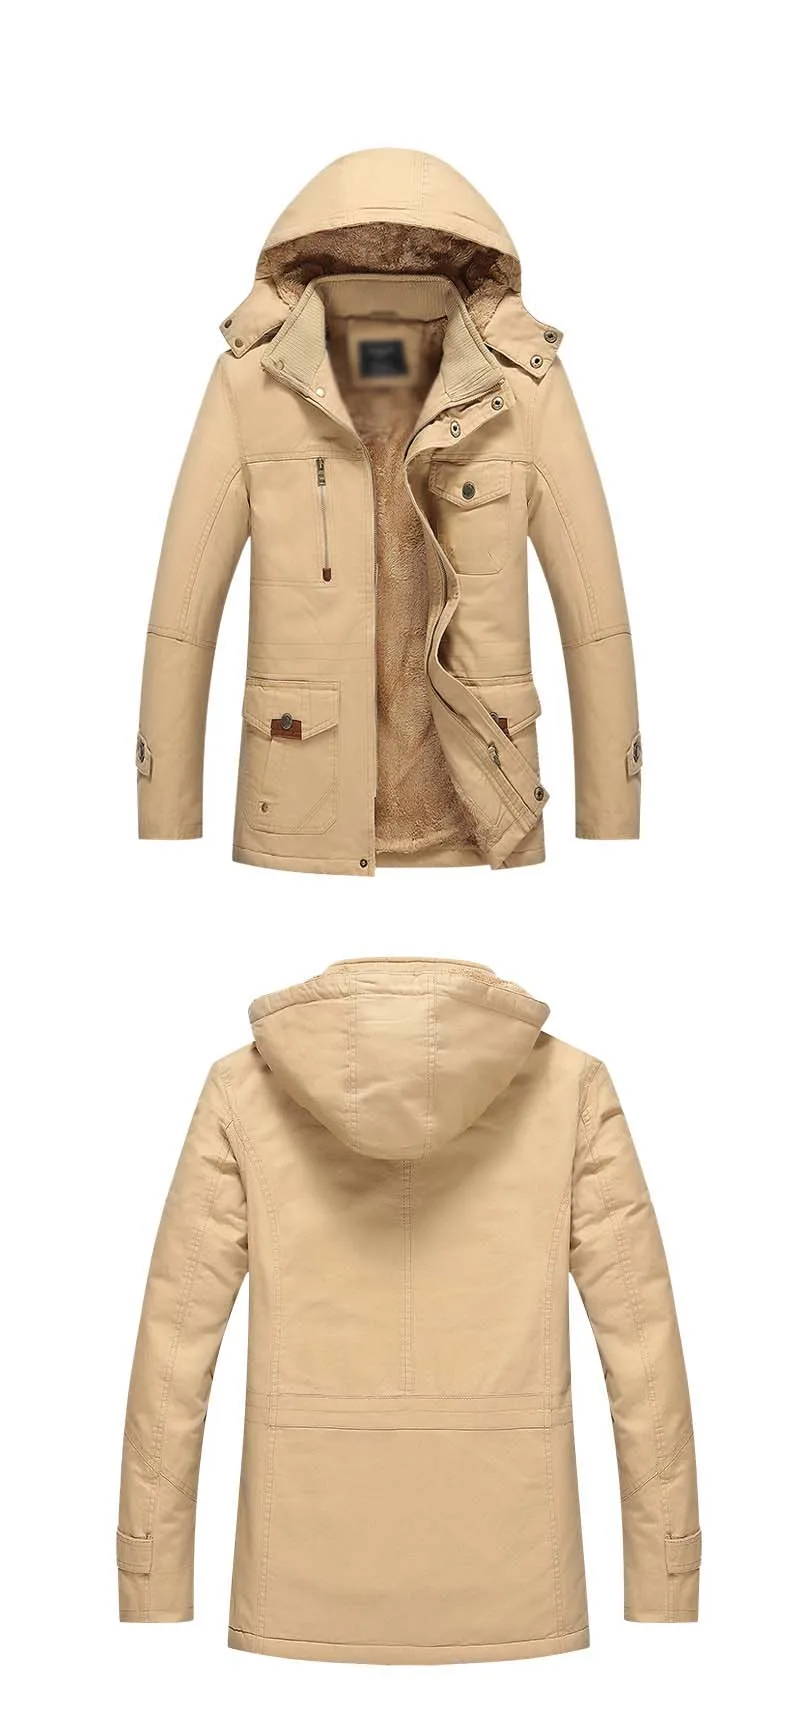 2019 Лидер продаж высокое Качественный хлопок брендовая одежда пальто для мужчин's тренчи для женщин куртки осень регулярные короткая куртк